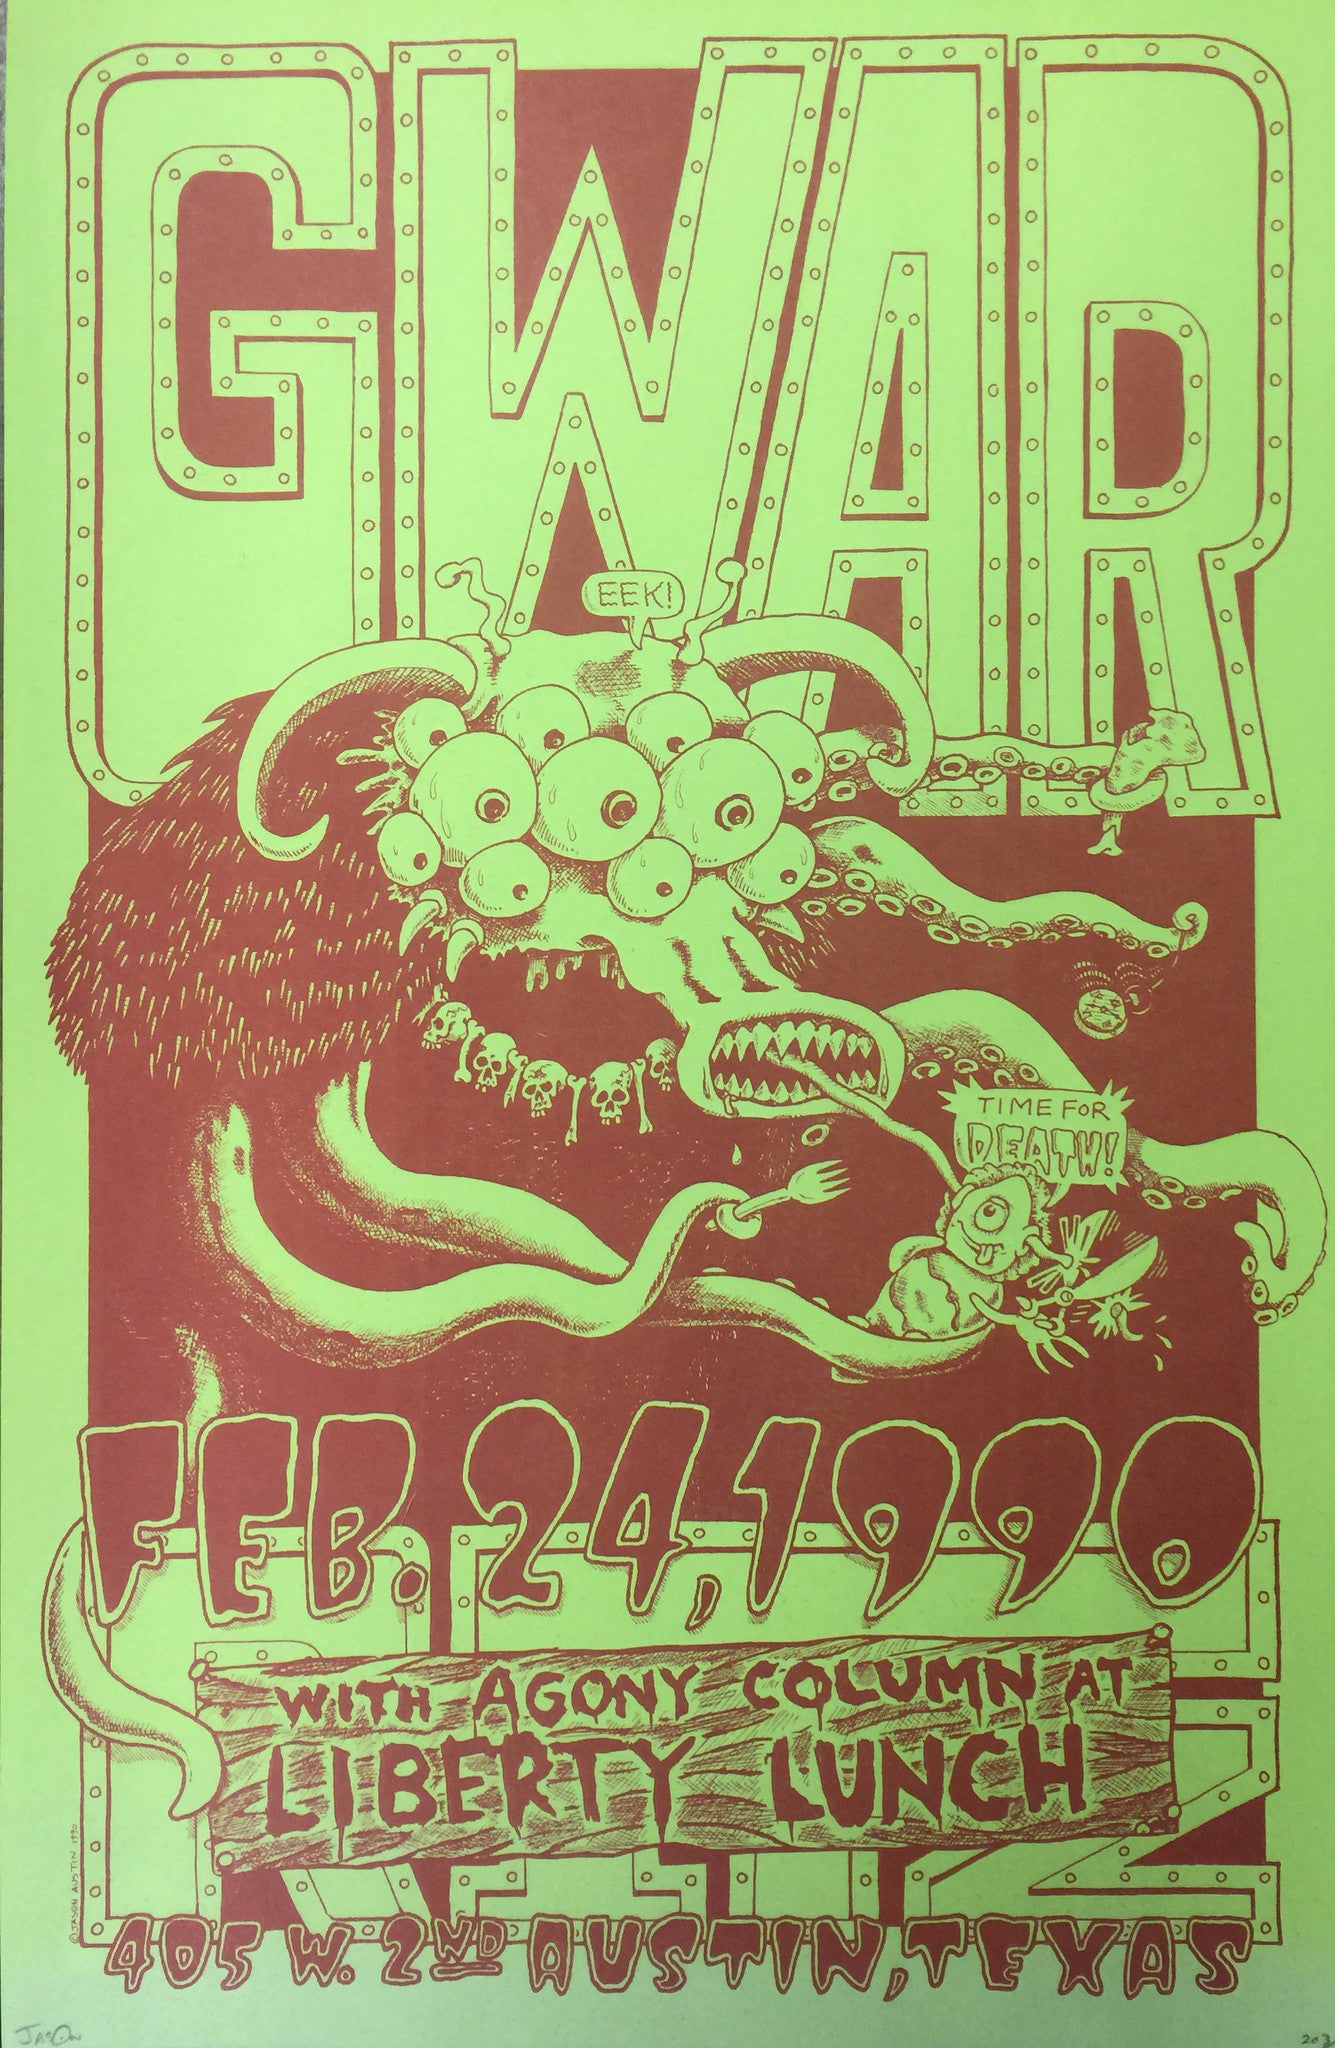 Jason Austin - 1990 - GWAR Concert Poster